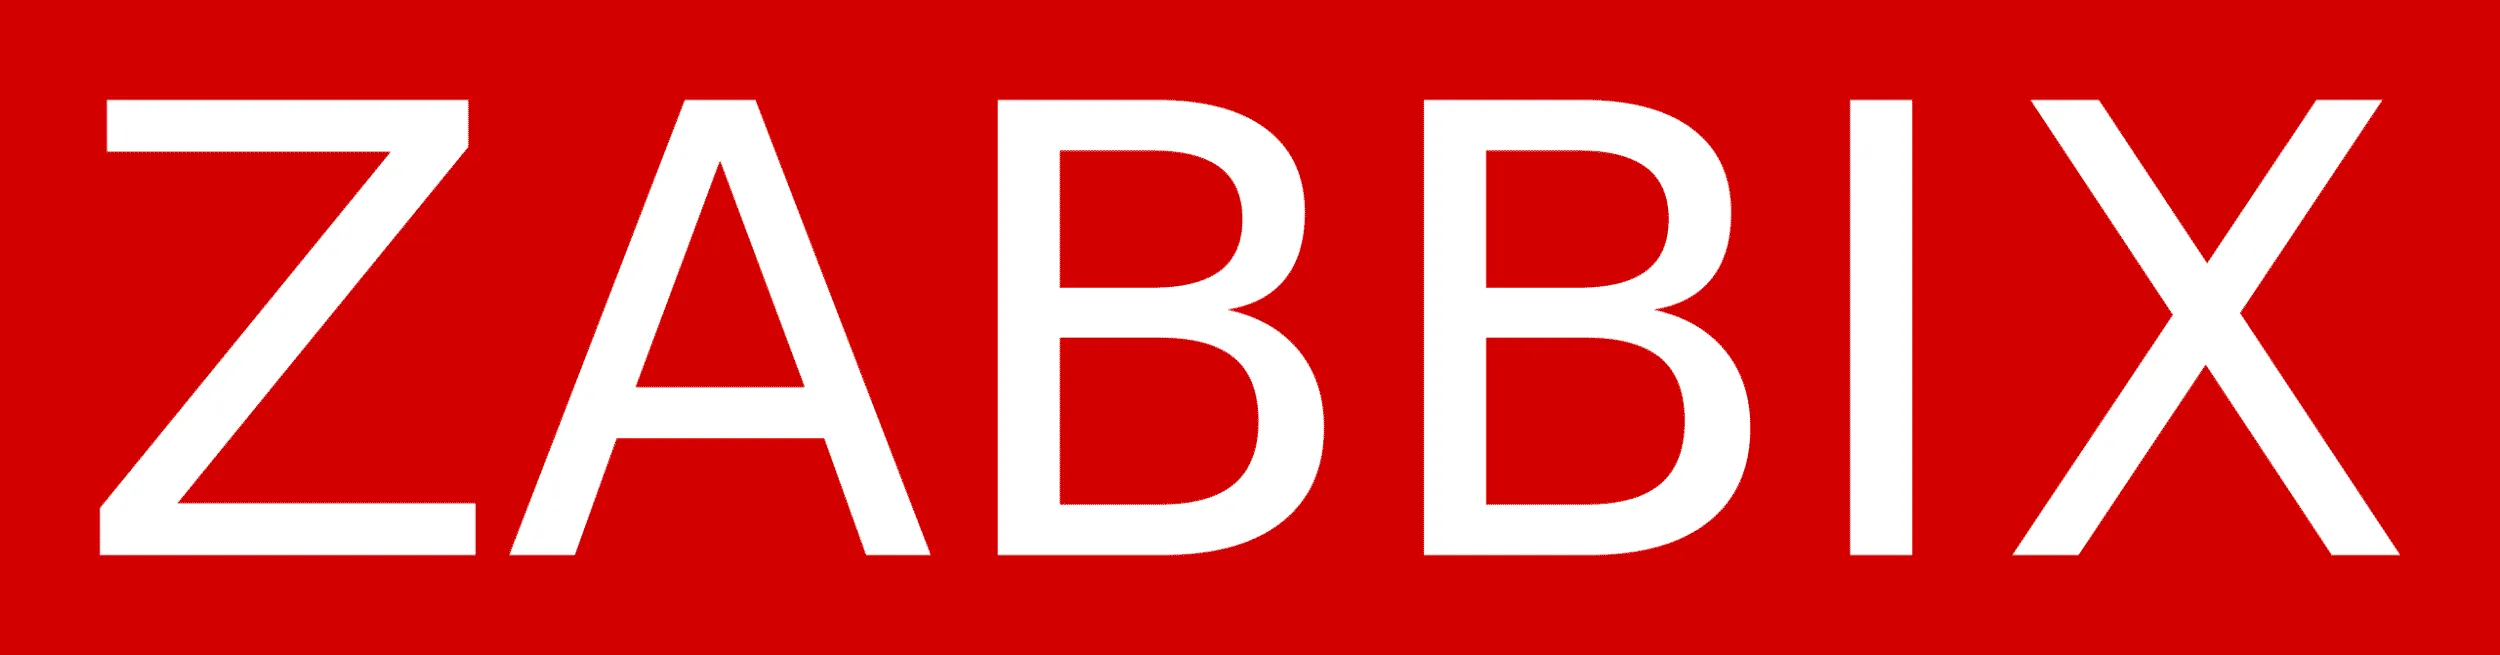 zabbix_logo logo